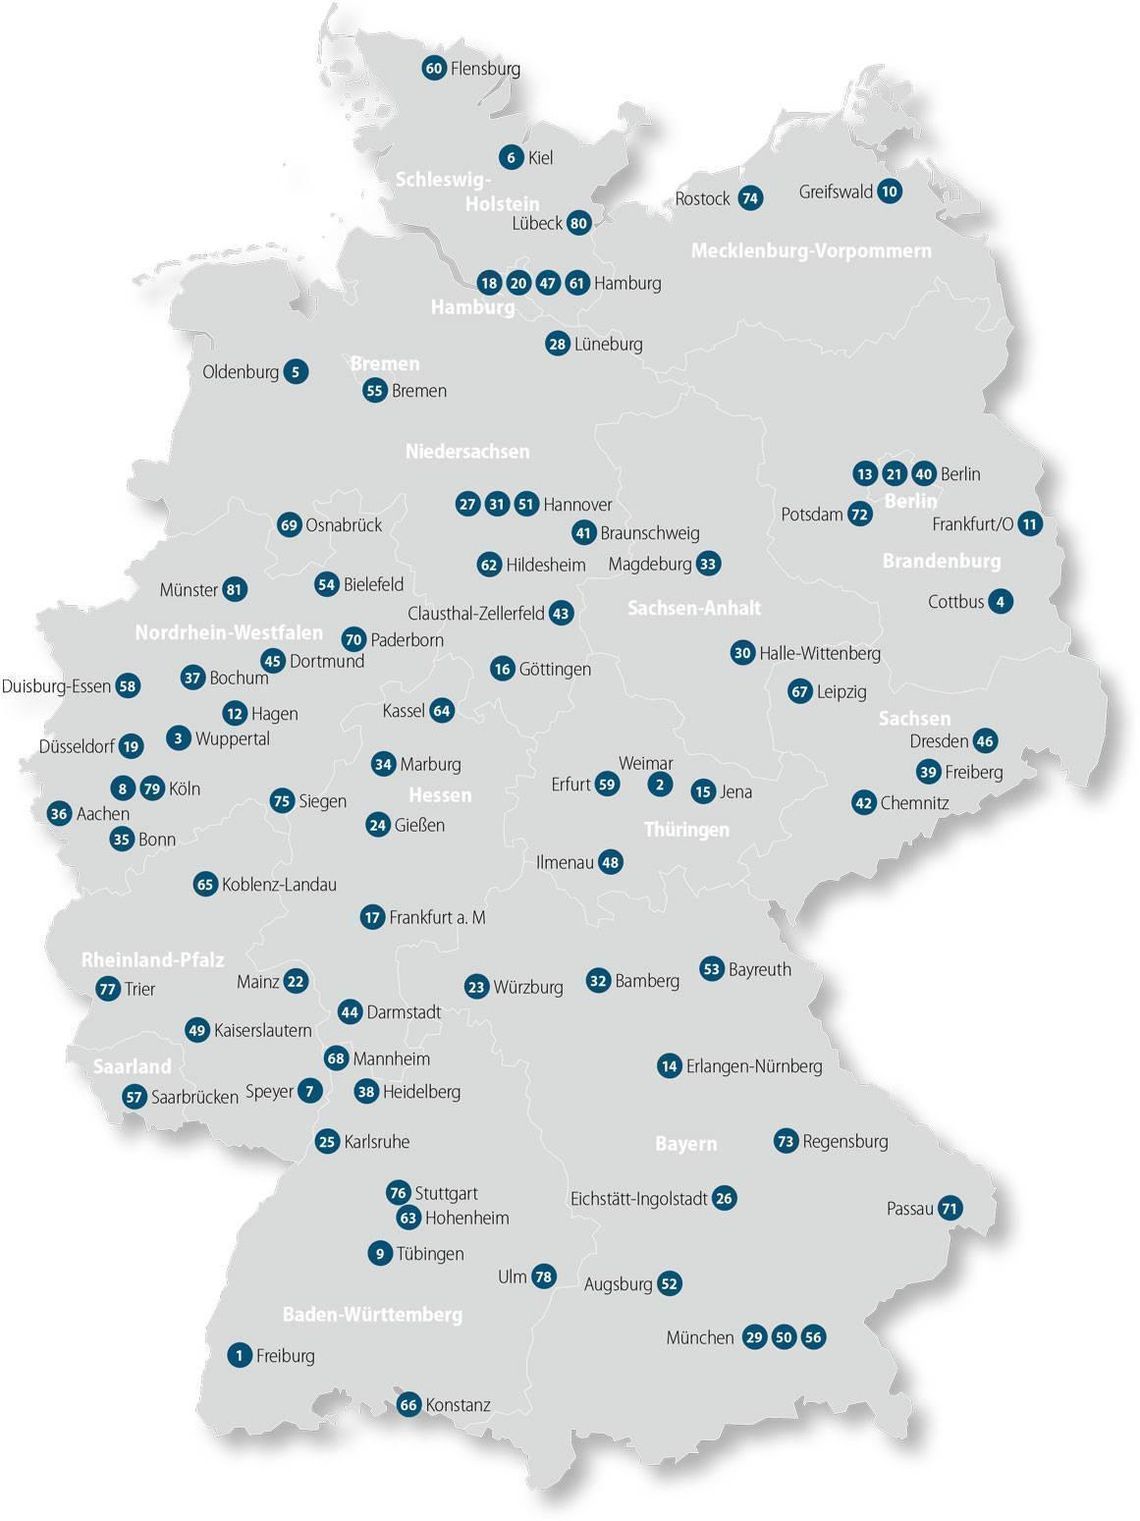 German public universities